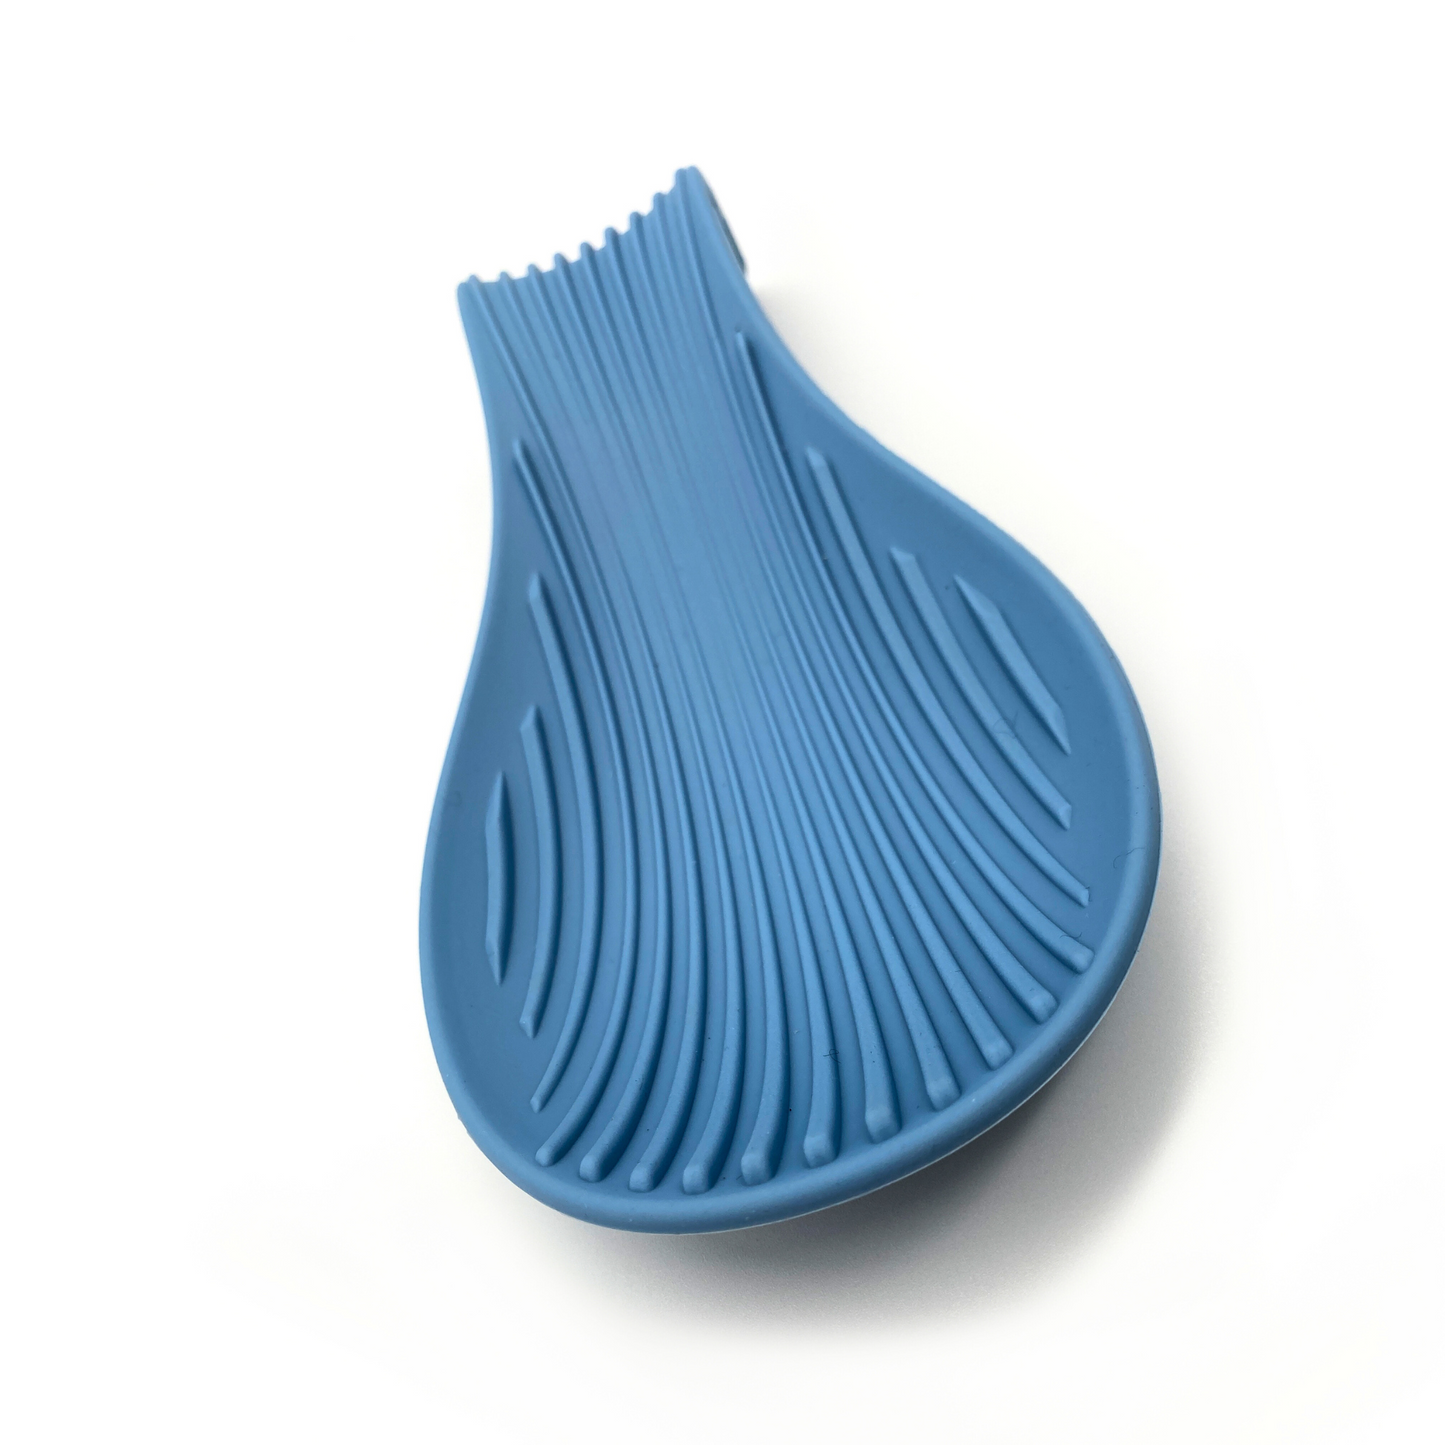 Soporte de silicona azul cielo para cucharas y utensilios de cocina